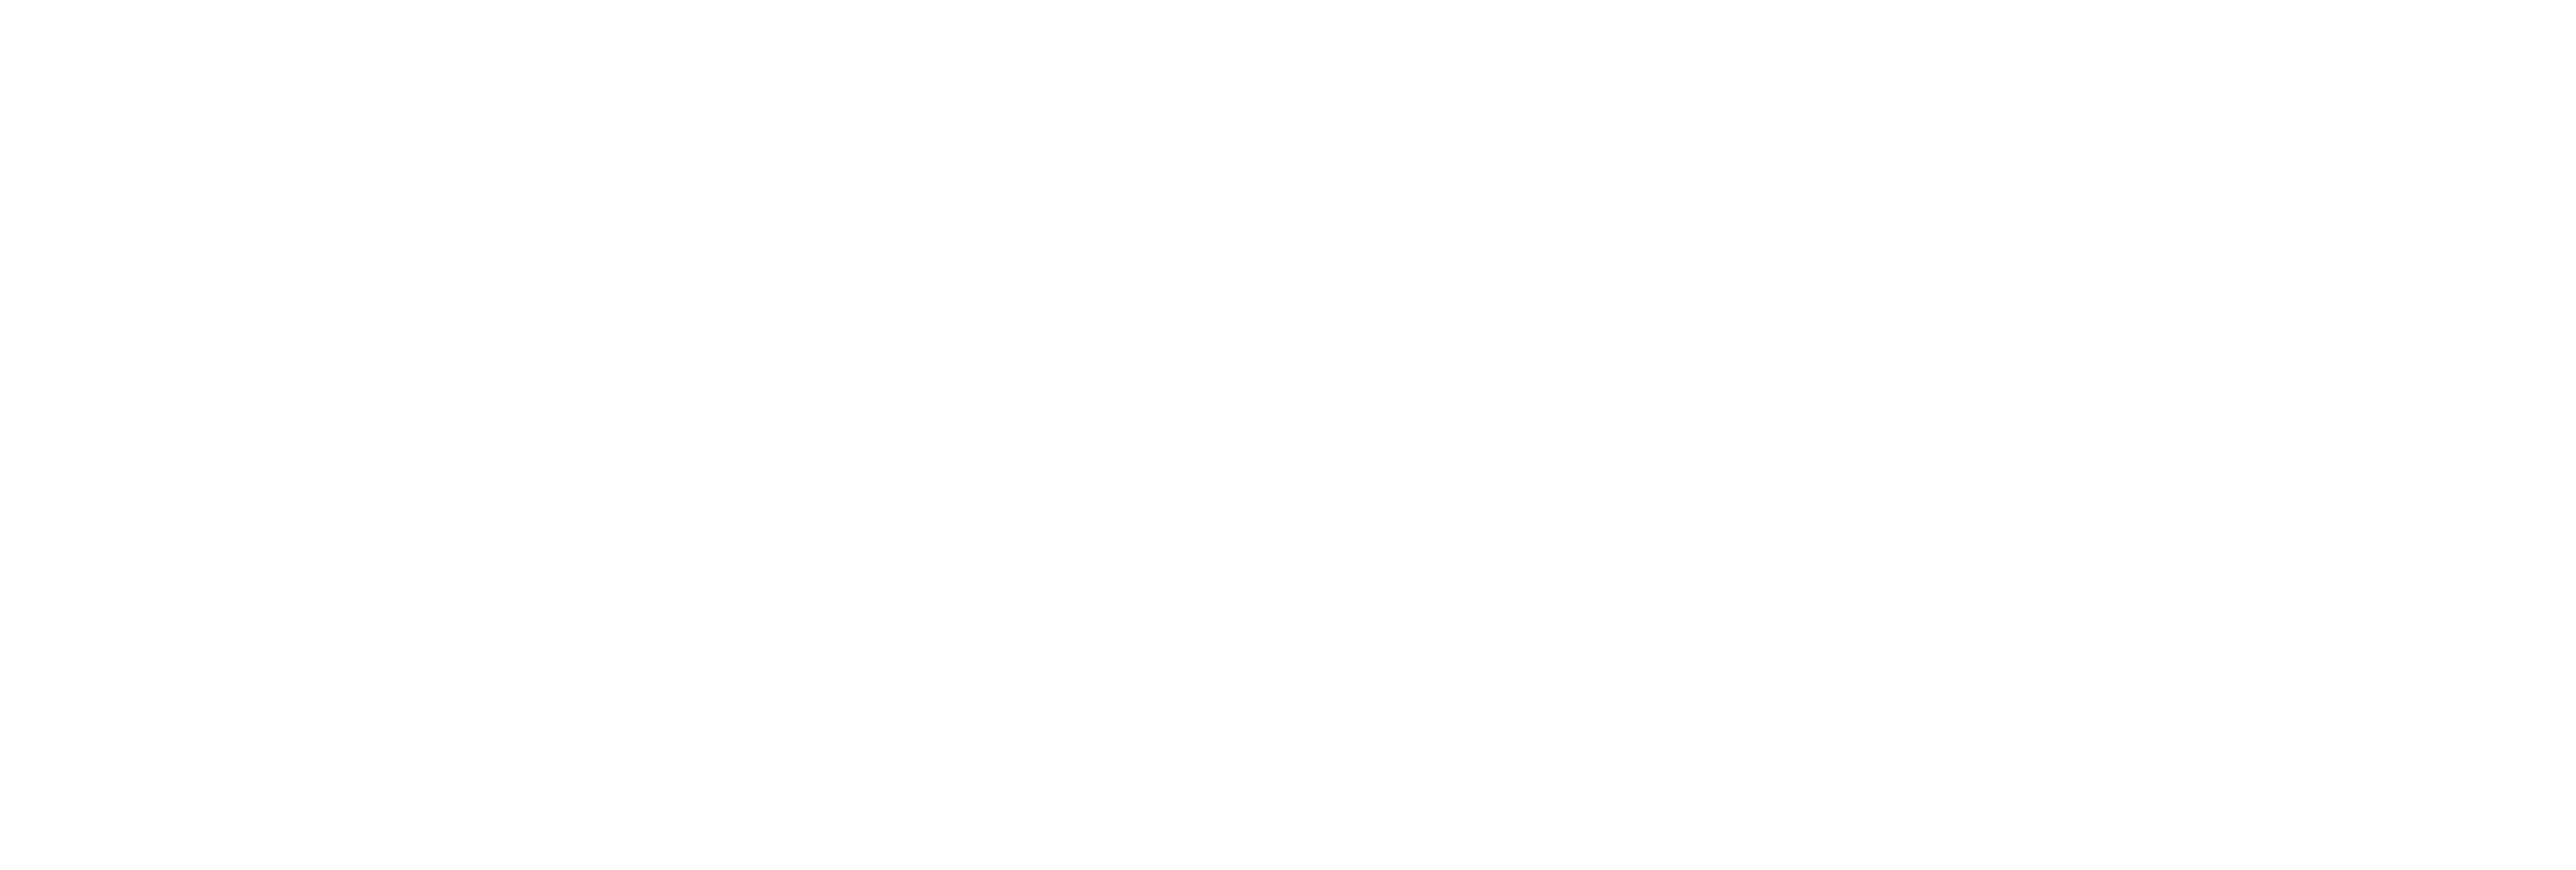 AniCura Katteklinikk Tromsø logo